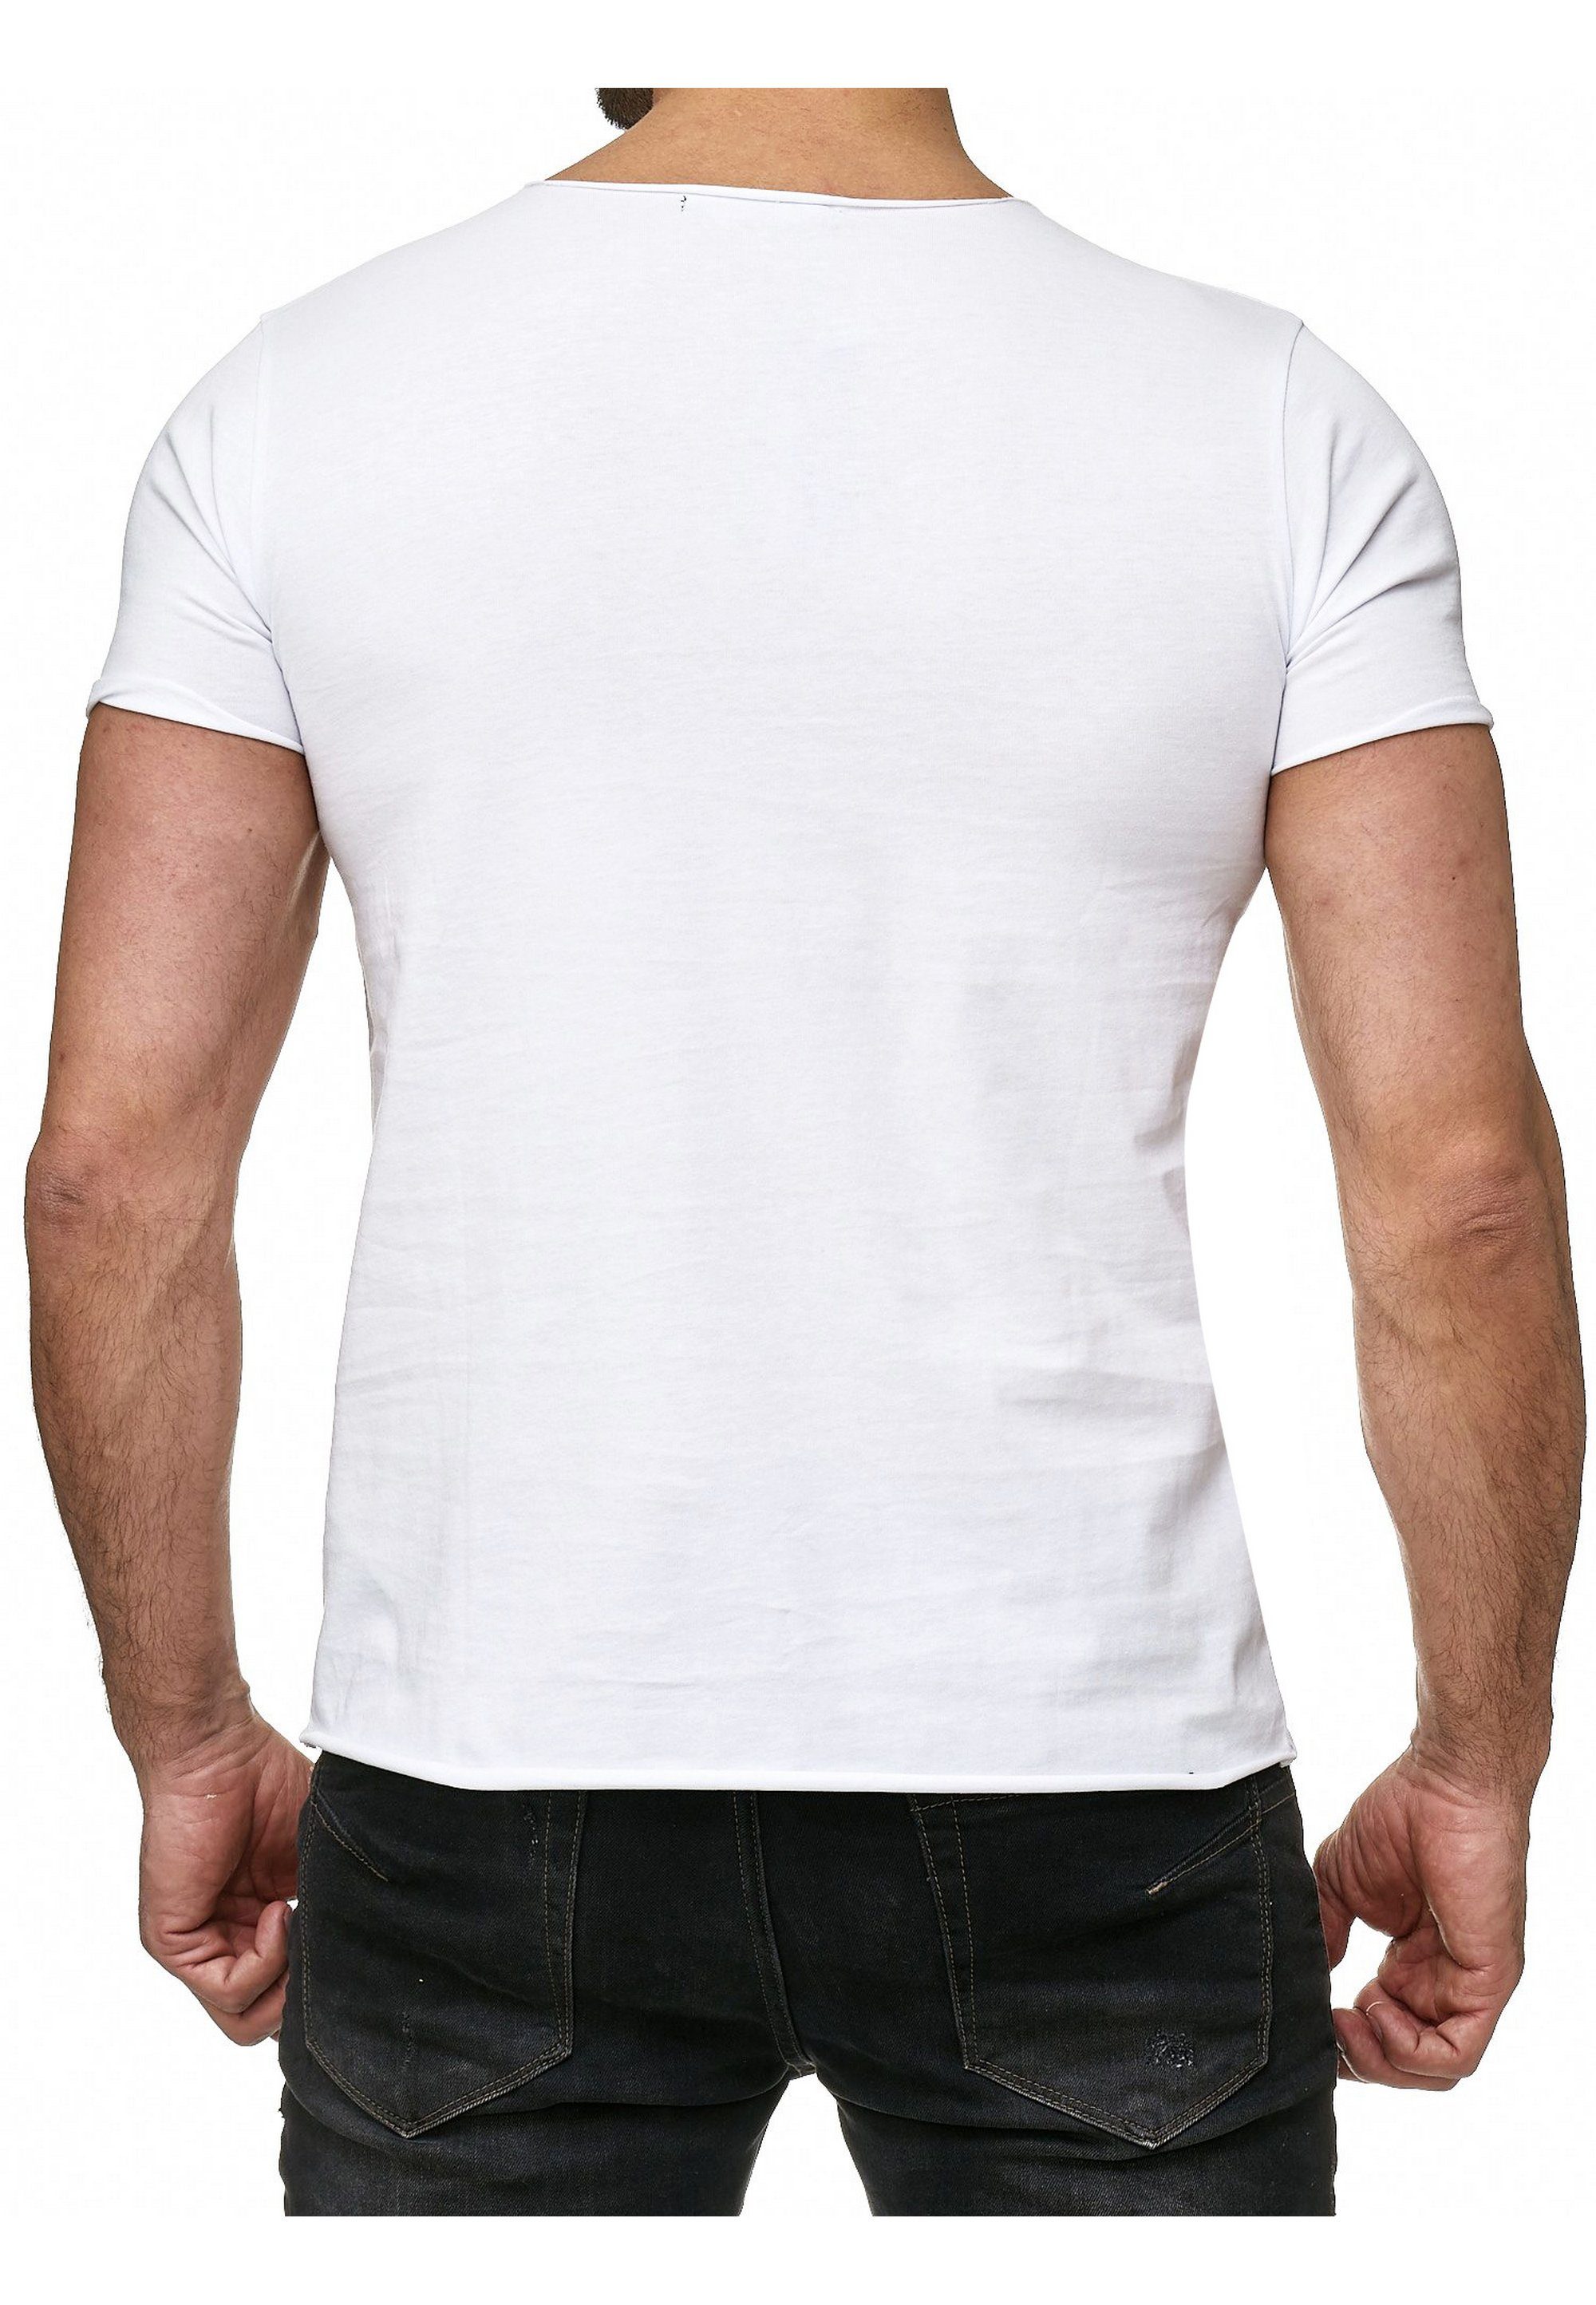 RedBridge mit Brusttasche T-Shirt weiß Jacksonville stylischer